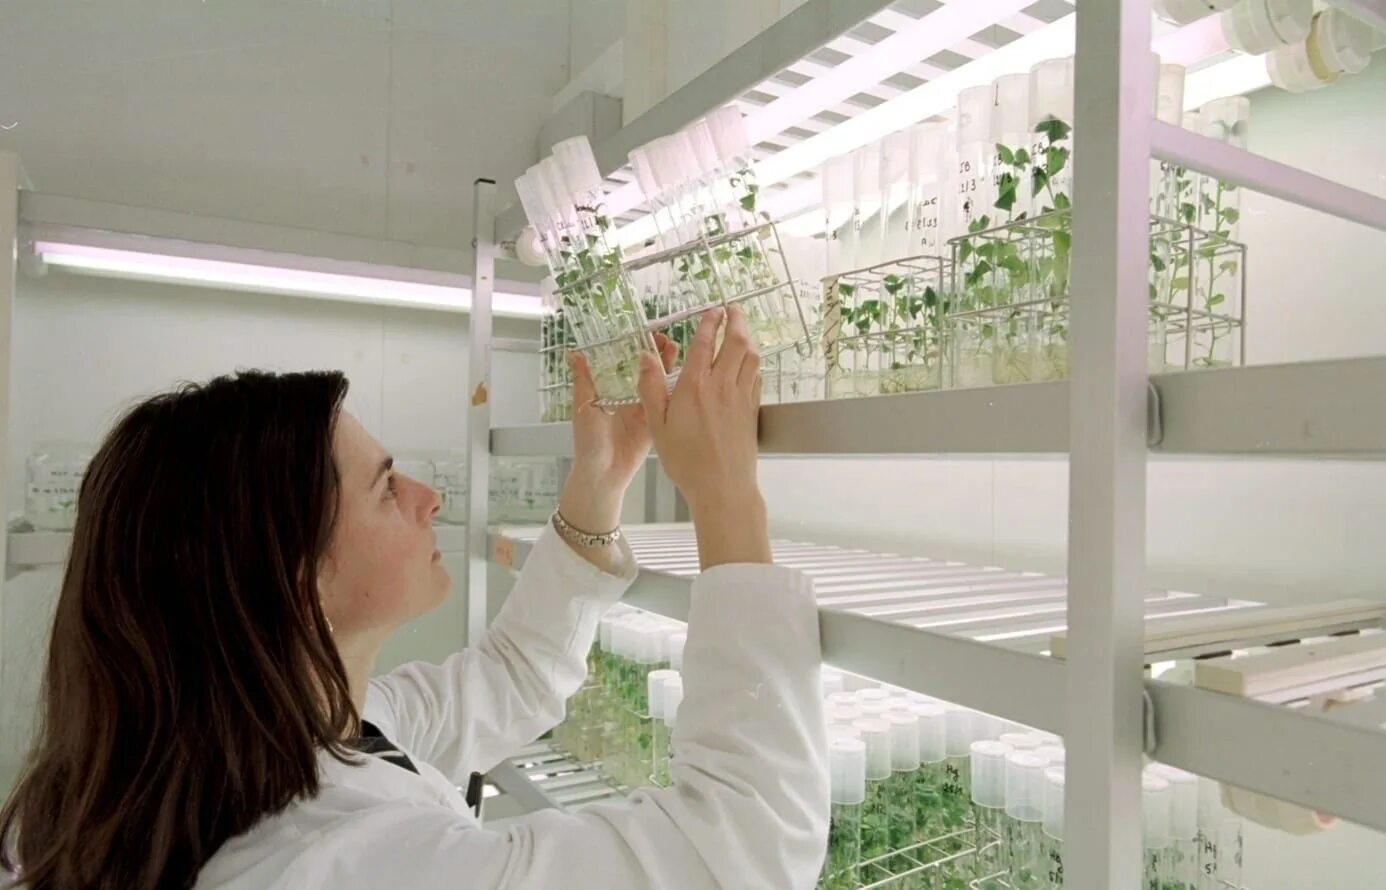 Plant culture. Лаборатория биотехнологии растений. Культивирование растений. Современные биотехнологии. Клонирование растений.